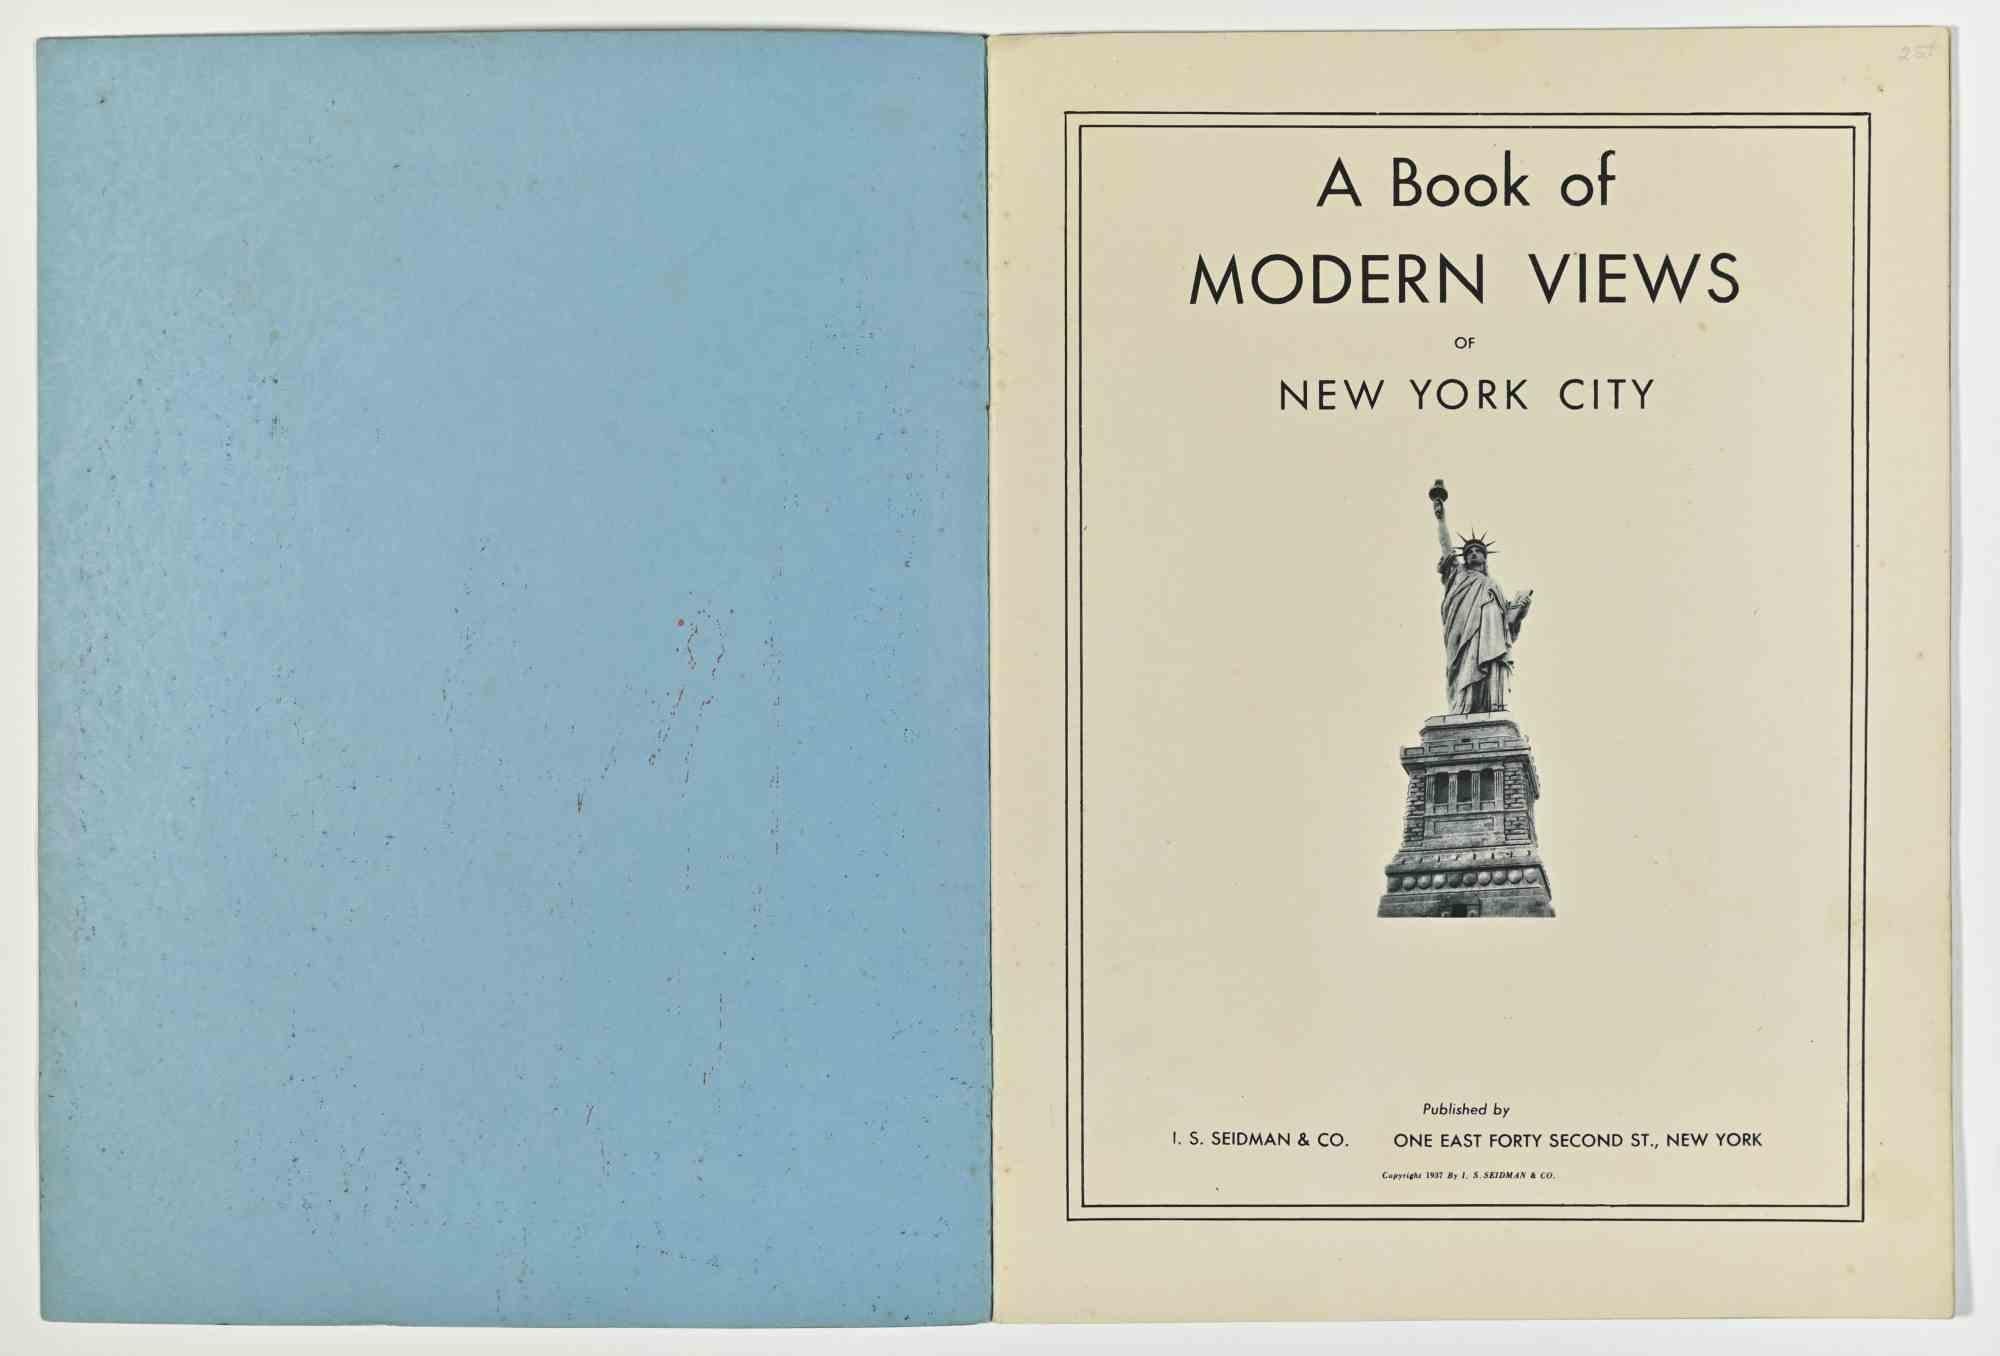 A Book of Modern Views of New York City ist ein Souvenirbuch, das 1937 von I. S. SEIDMAN & CO. veröffentlicht wurde.

Innenaufnahmen von New York mit Beschreibungen.

Guter Zustand.